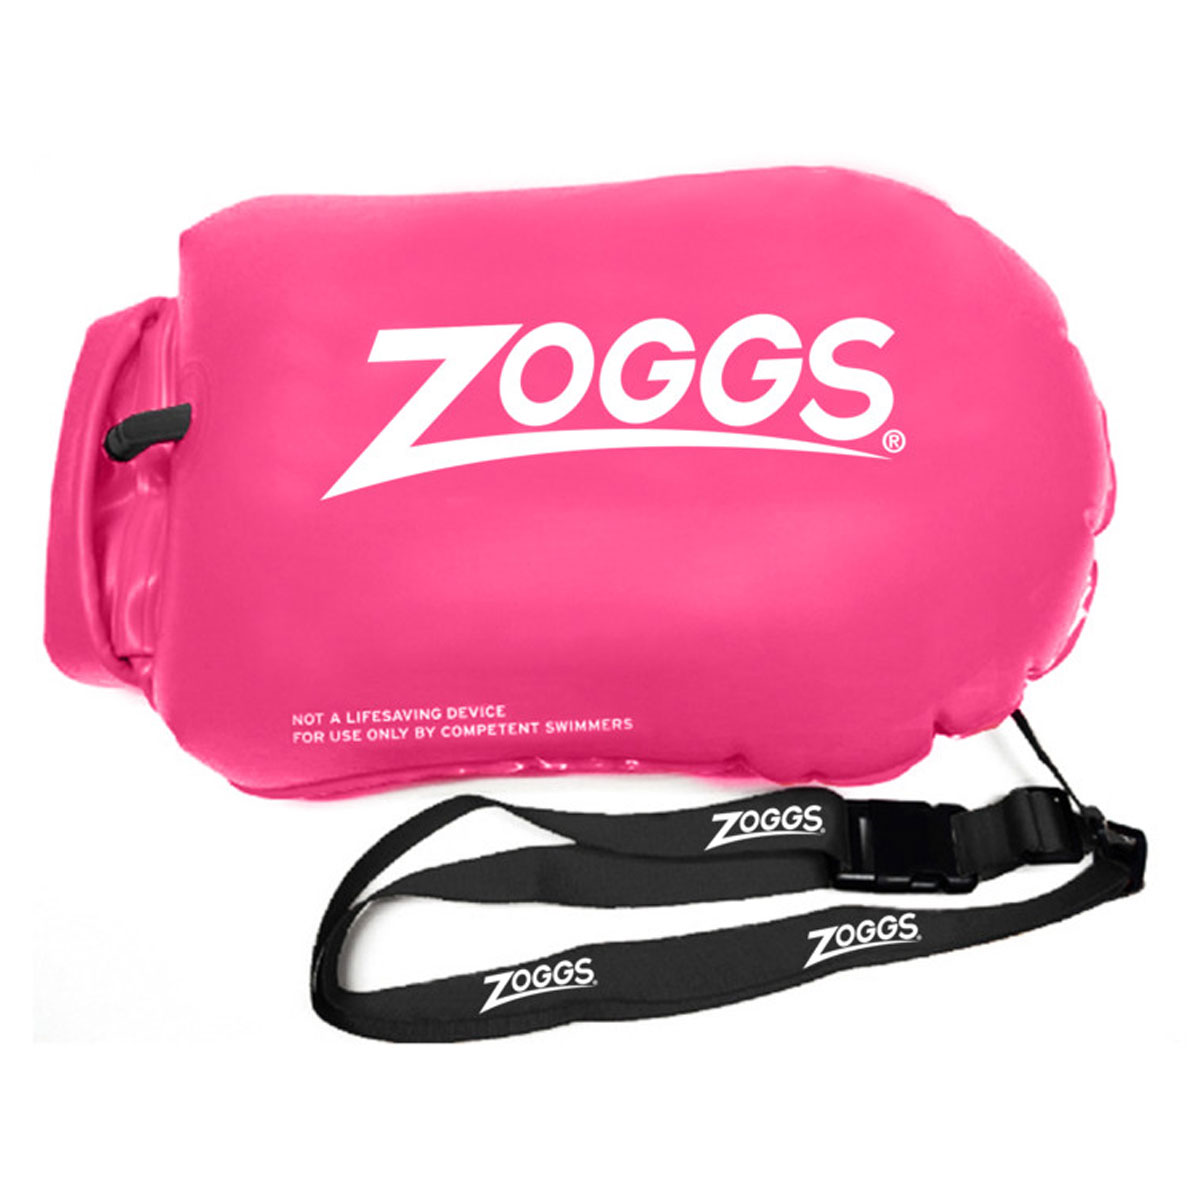 Zoggs Hi-Viz Boya de Seguridad para Natación 12L Rosa